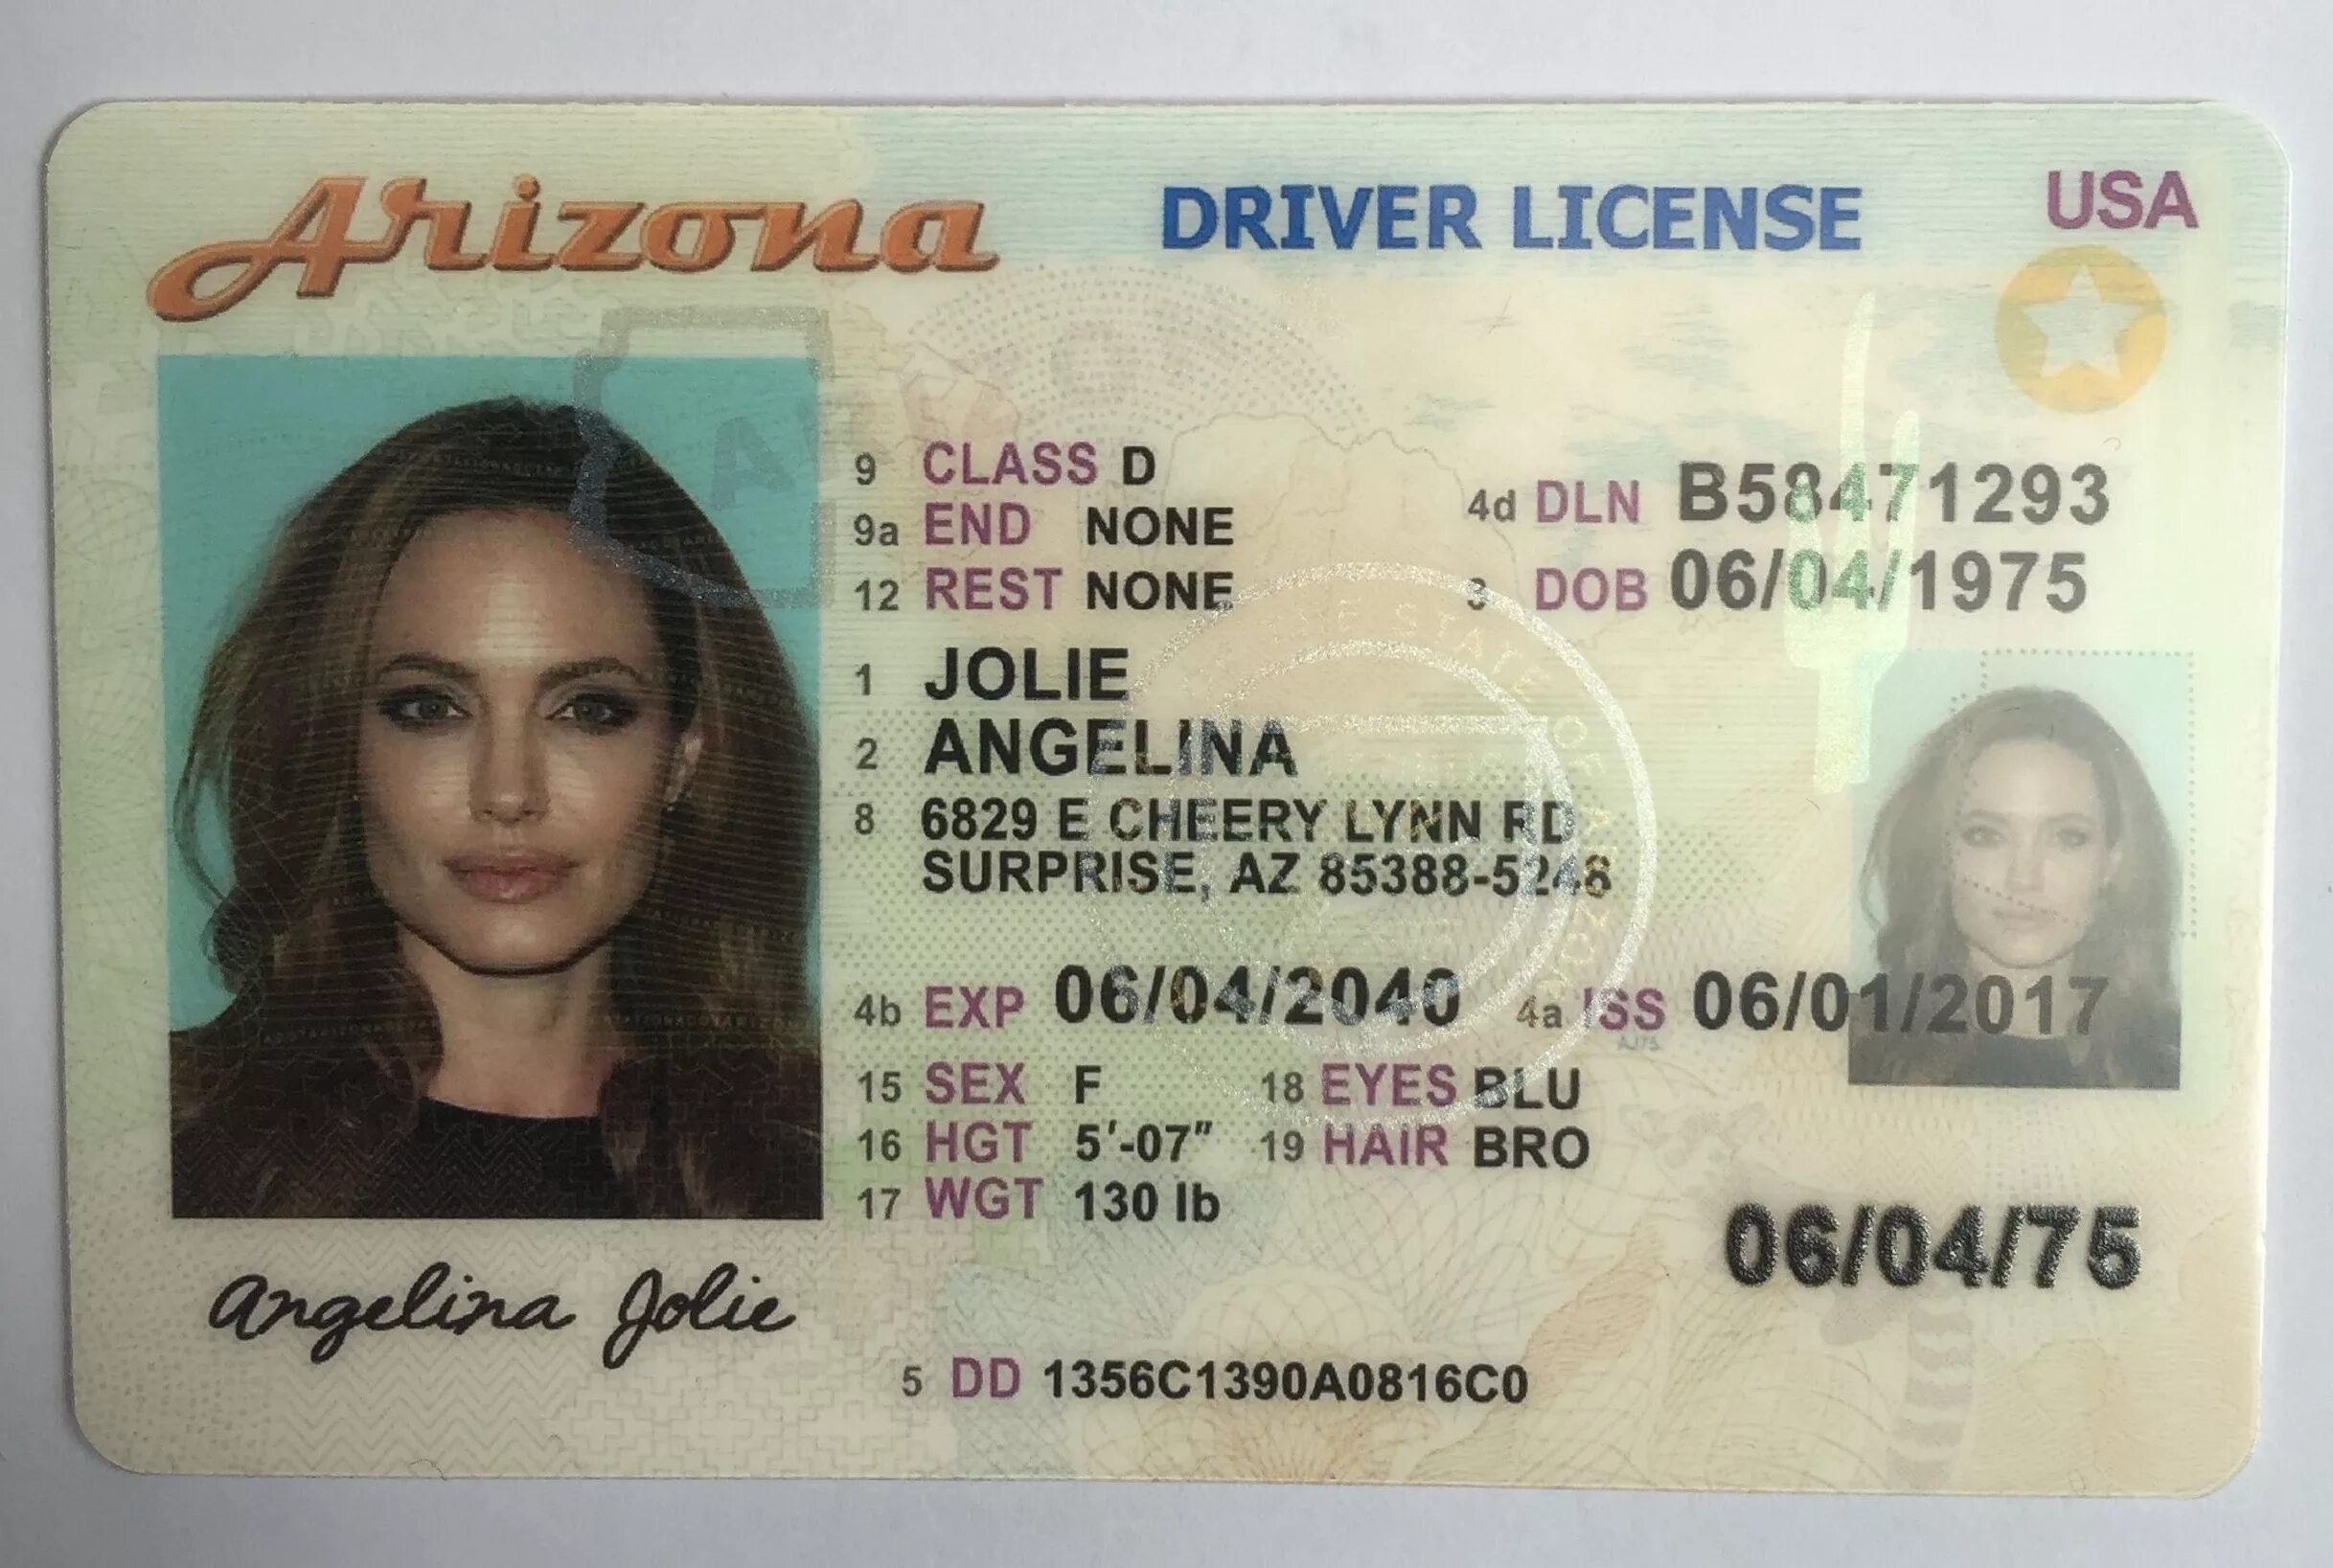 Ids license. Американский ID. ID Card США.